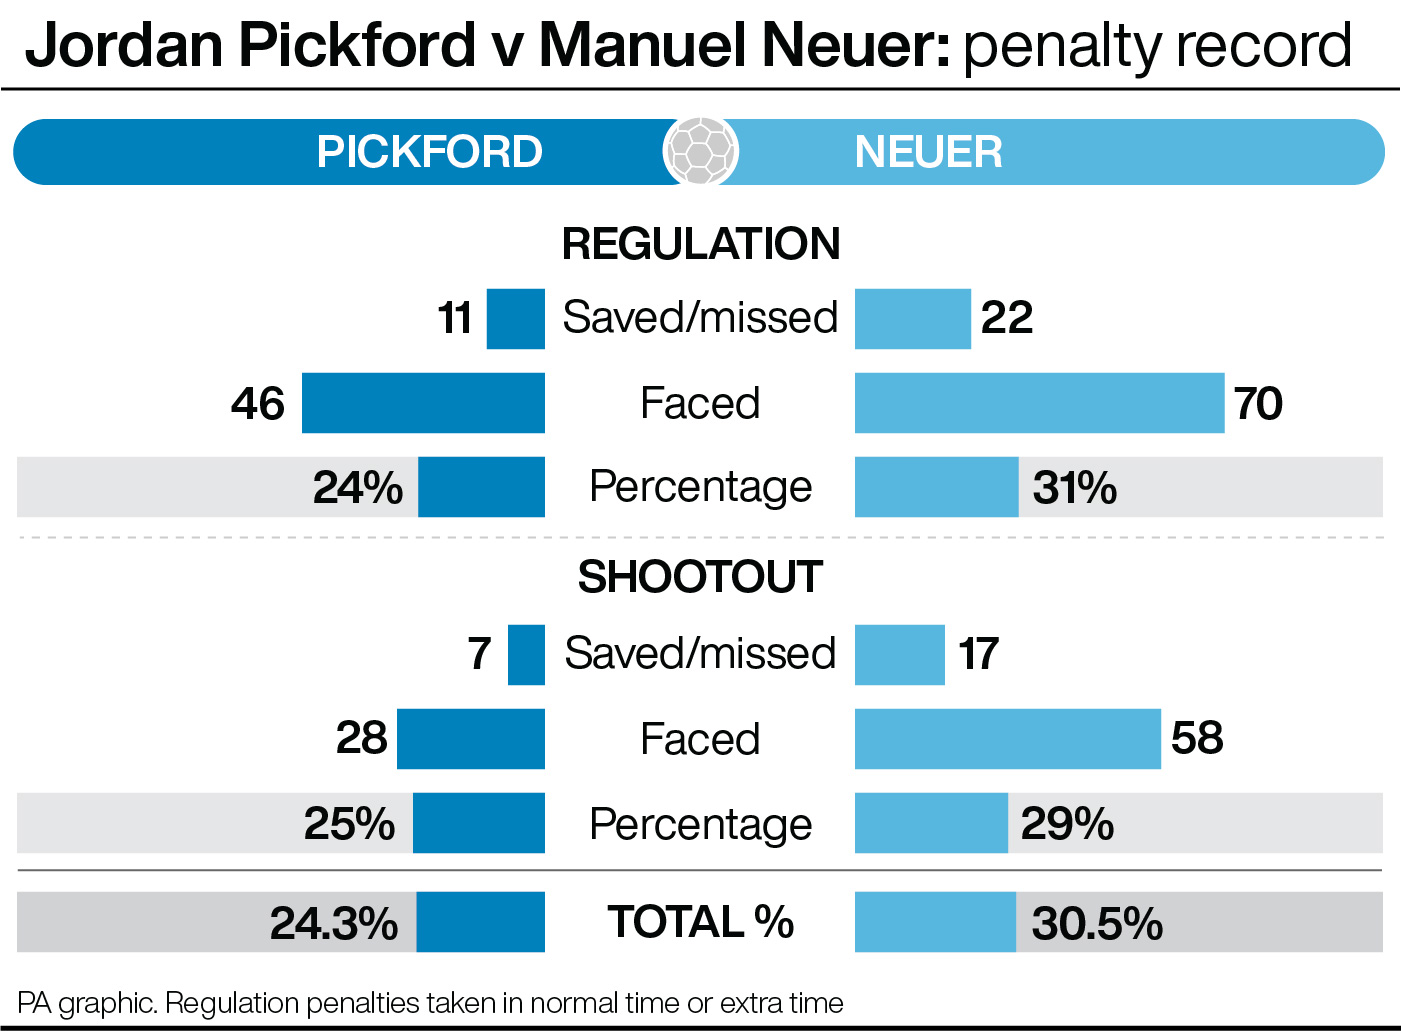 Jordan Pickford v Manuel Neuer: penalty record